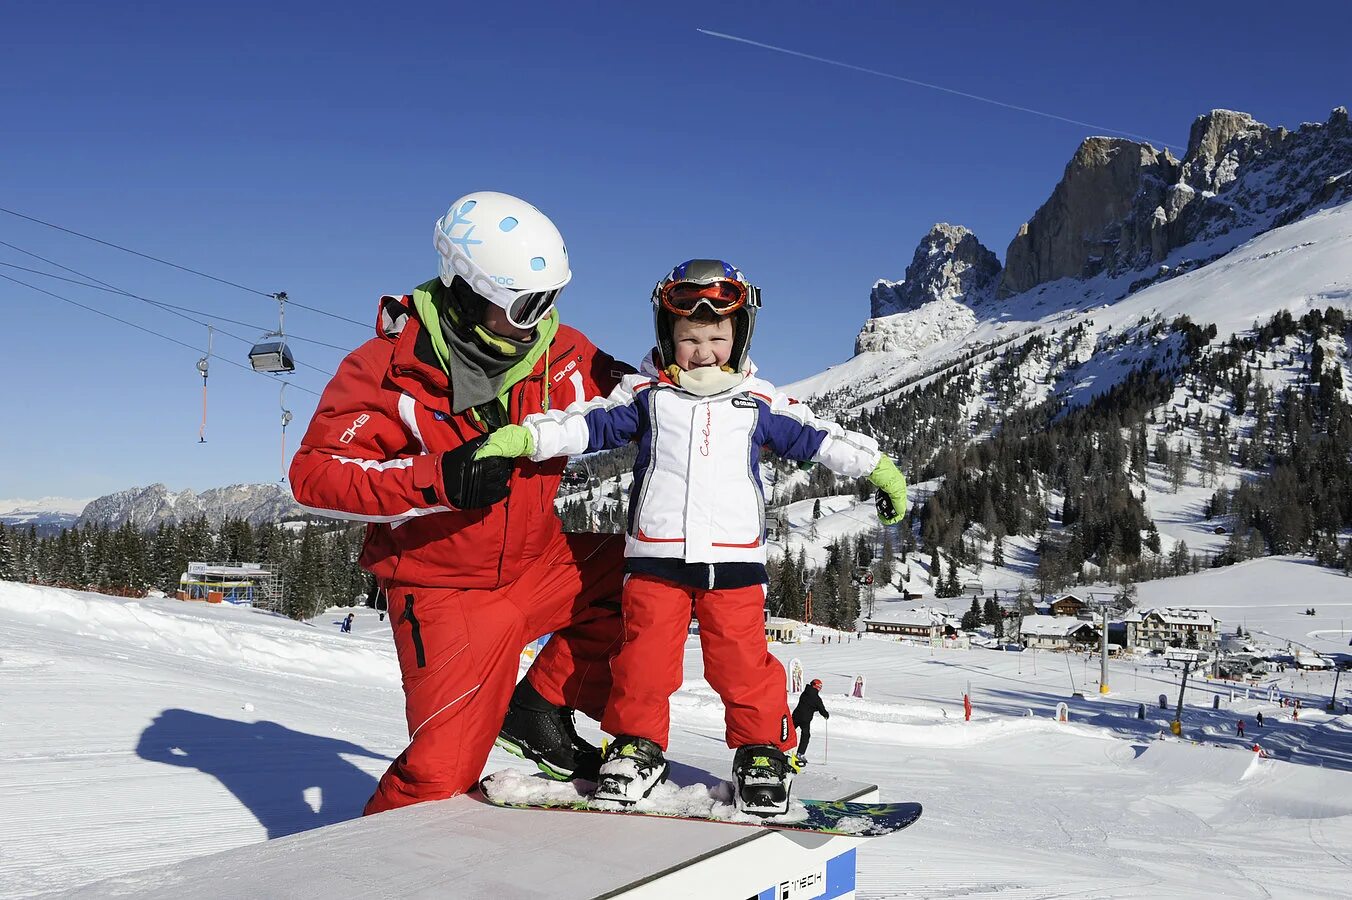 Катание на горнолыжном курорте. Дети на горнолыжном курорте. Горные лыжи Италия. Катание на горнолыжный курорт. Дети на на лыжах в Альпах.